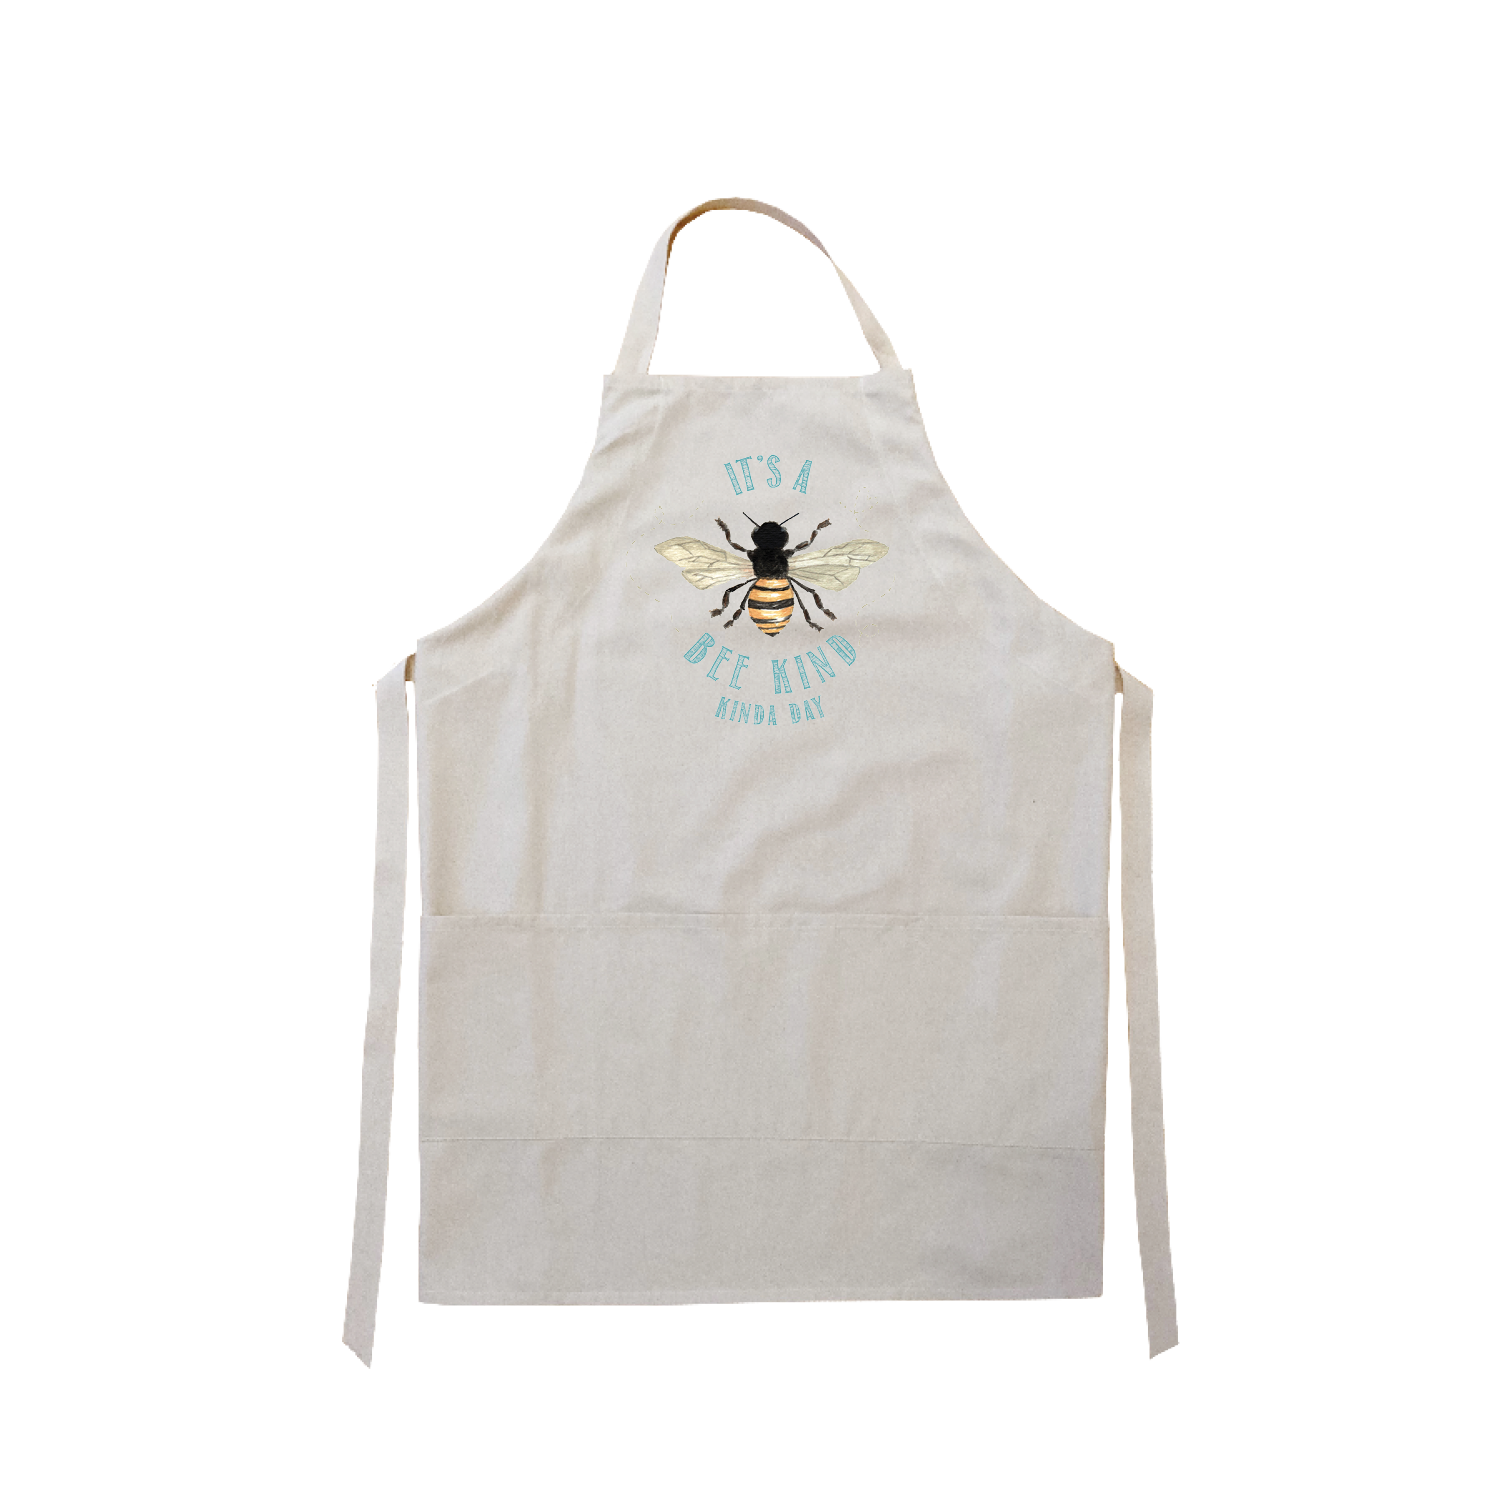 bee kind, kinda day apron